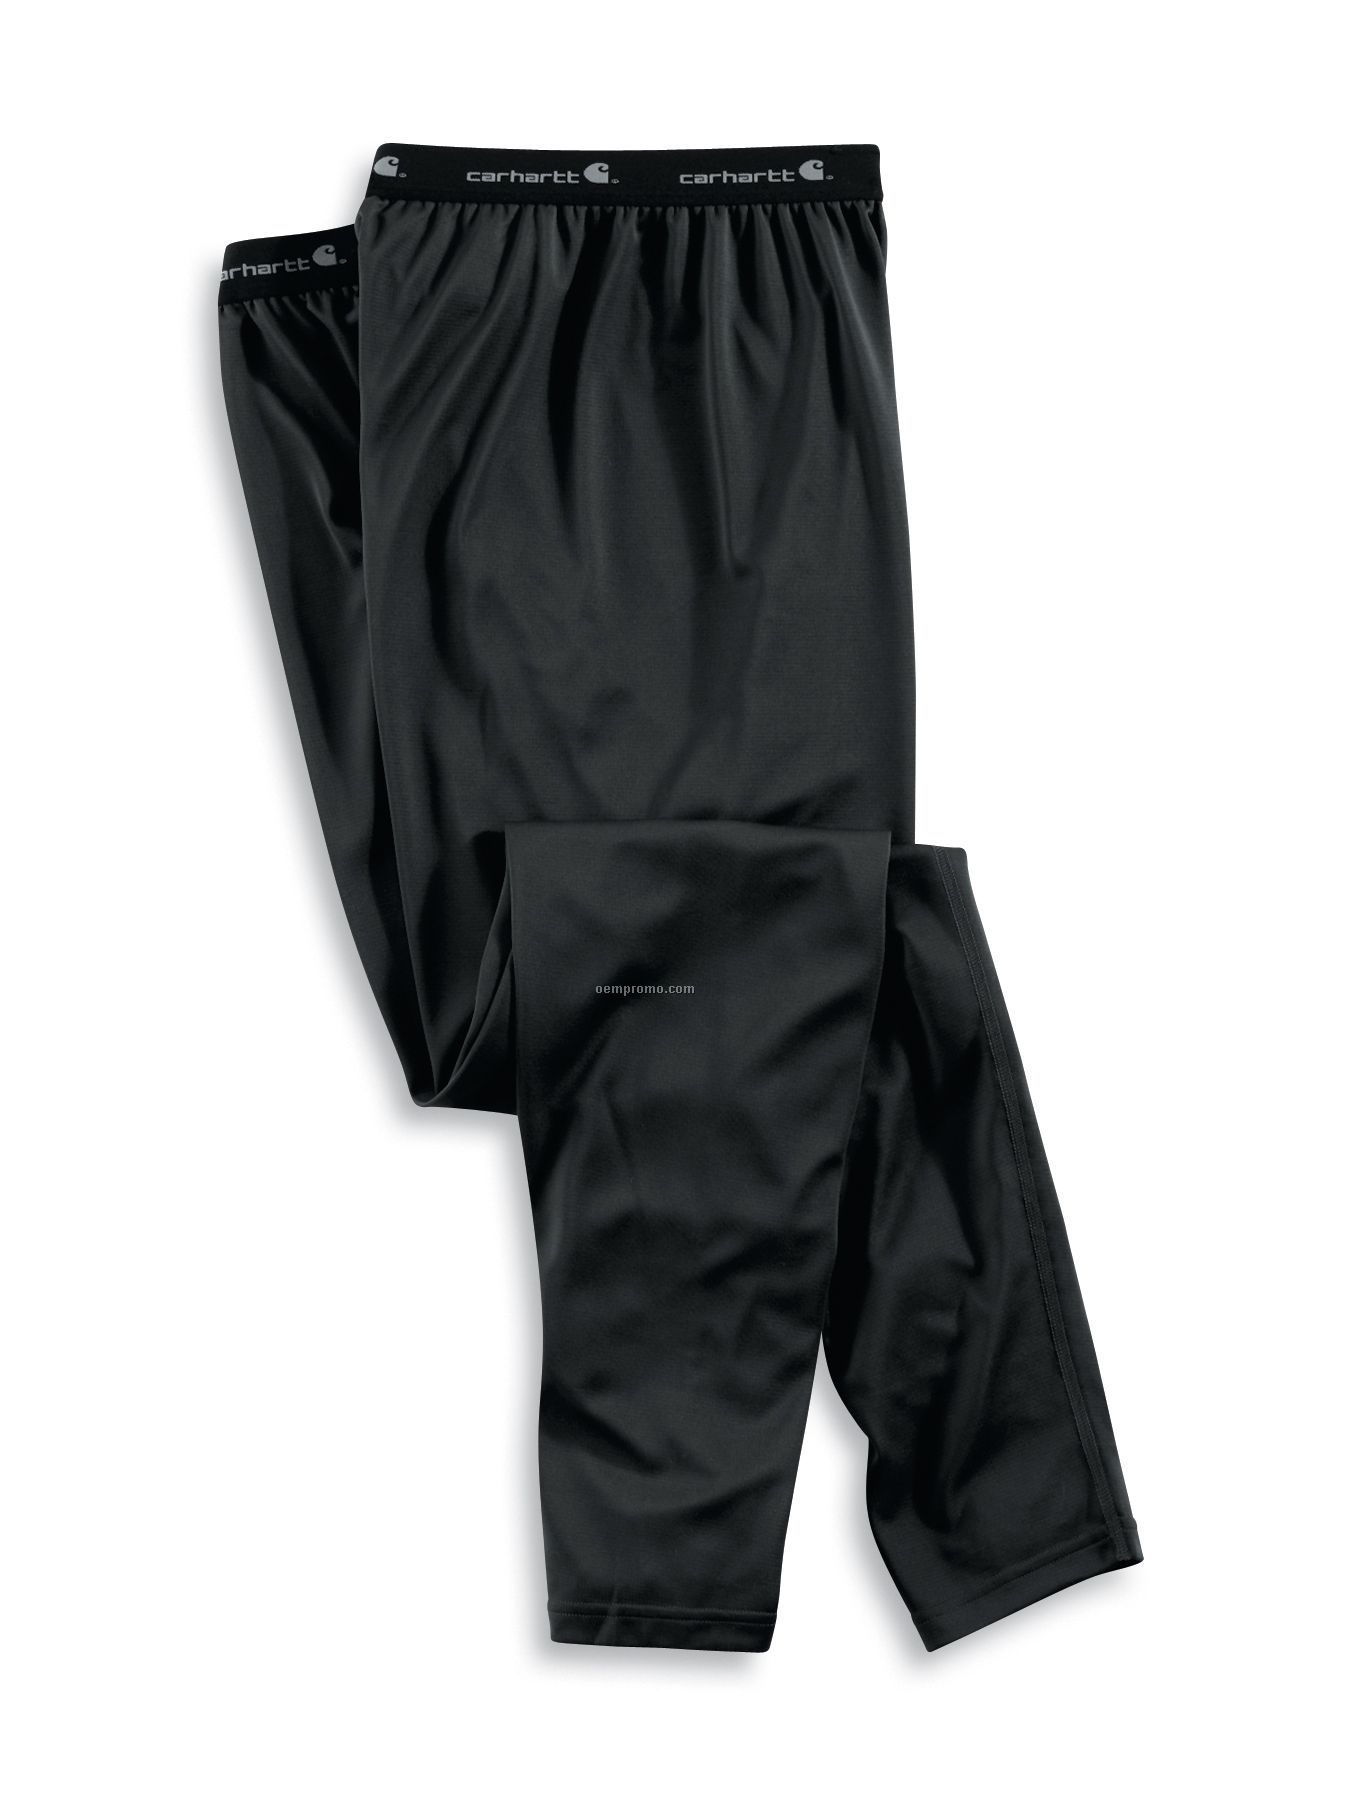 Carhartt Men's Lightweight Thermal Underwear Bottom W/ Work Dry Base Layer